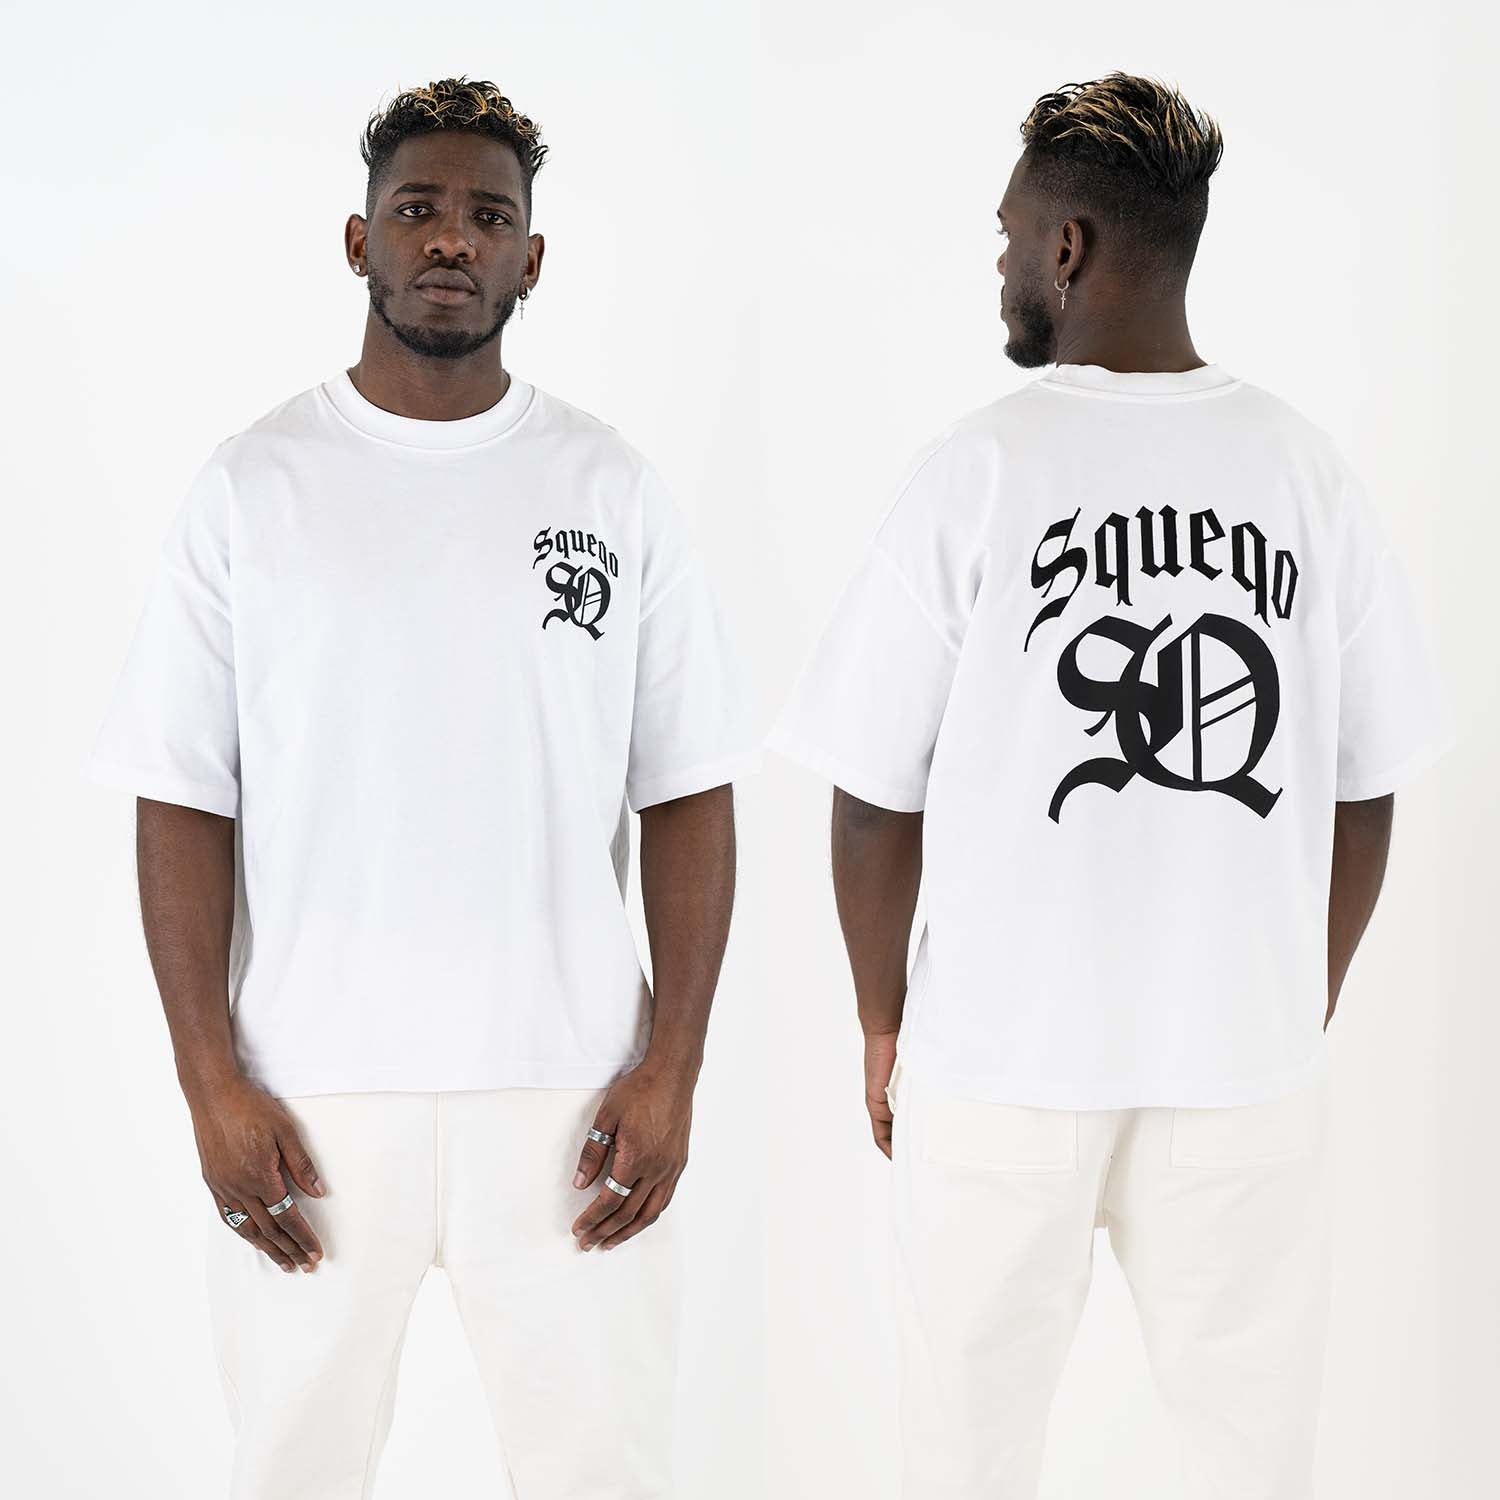 Herren-T-Shirt Weiß mit Squeqo-Monogramm, Vorder- und Rückseite